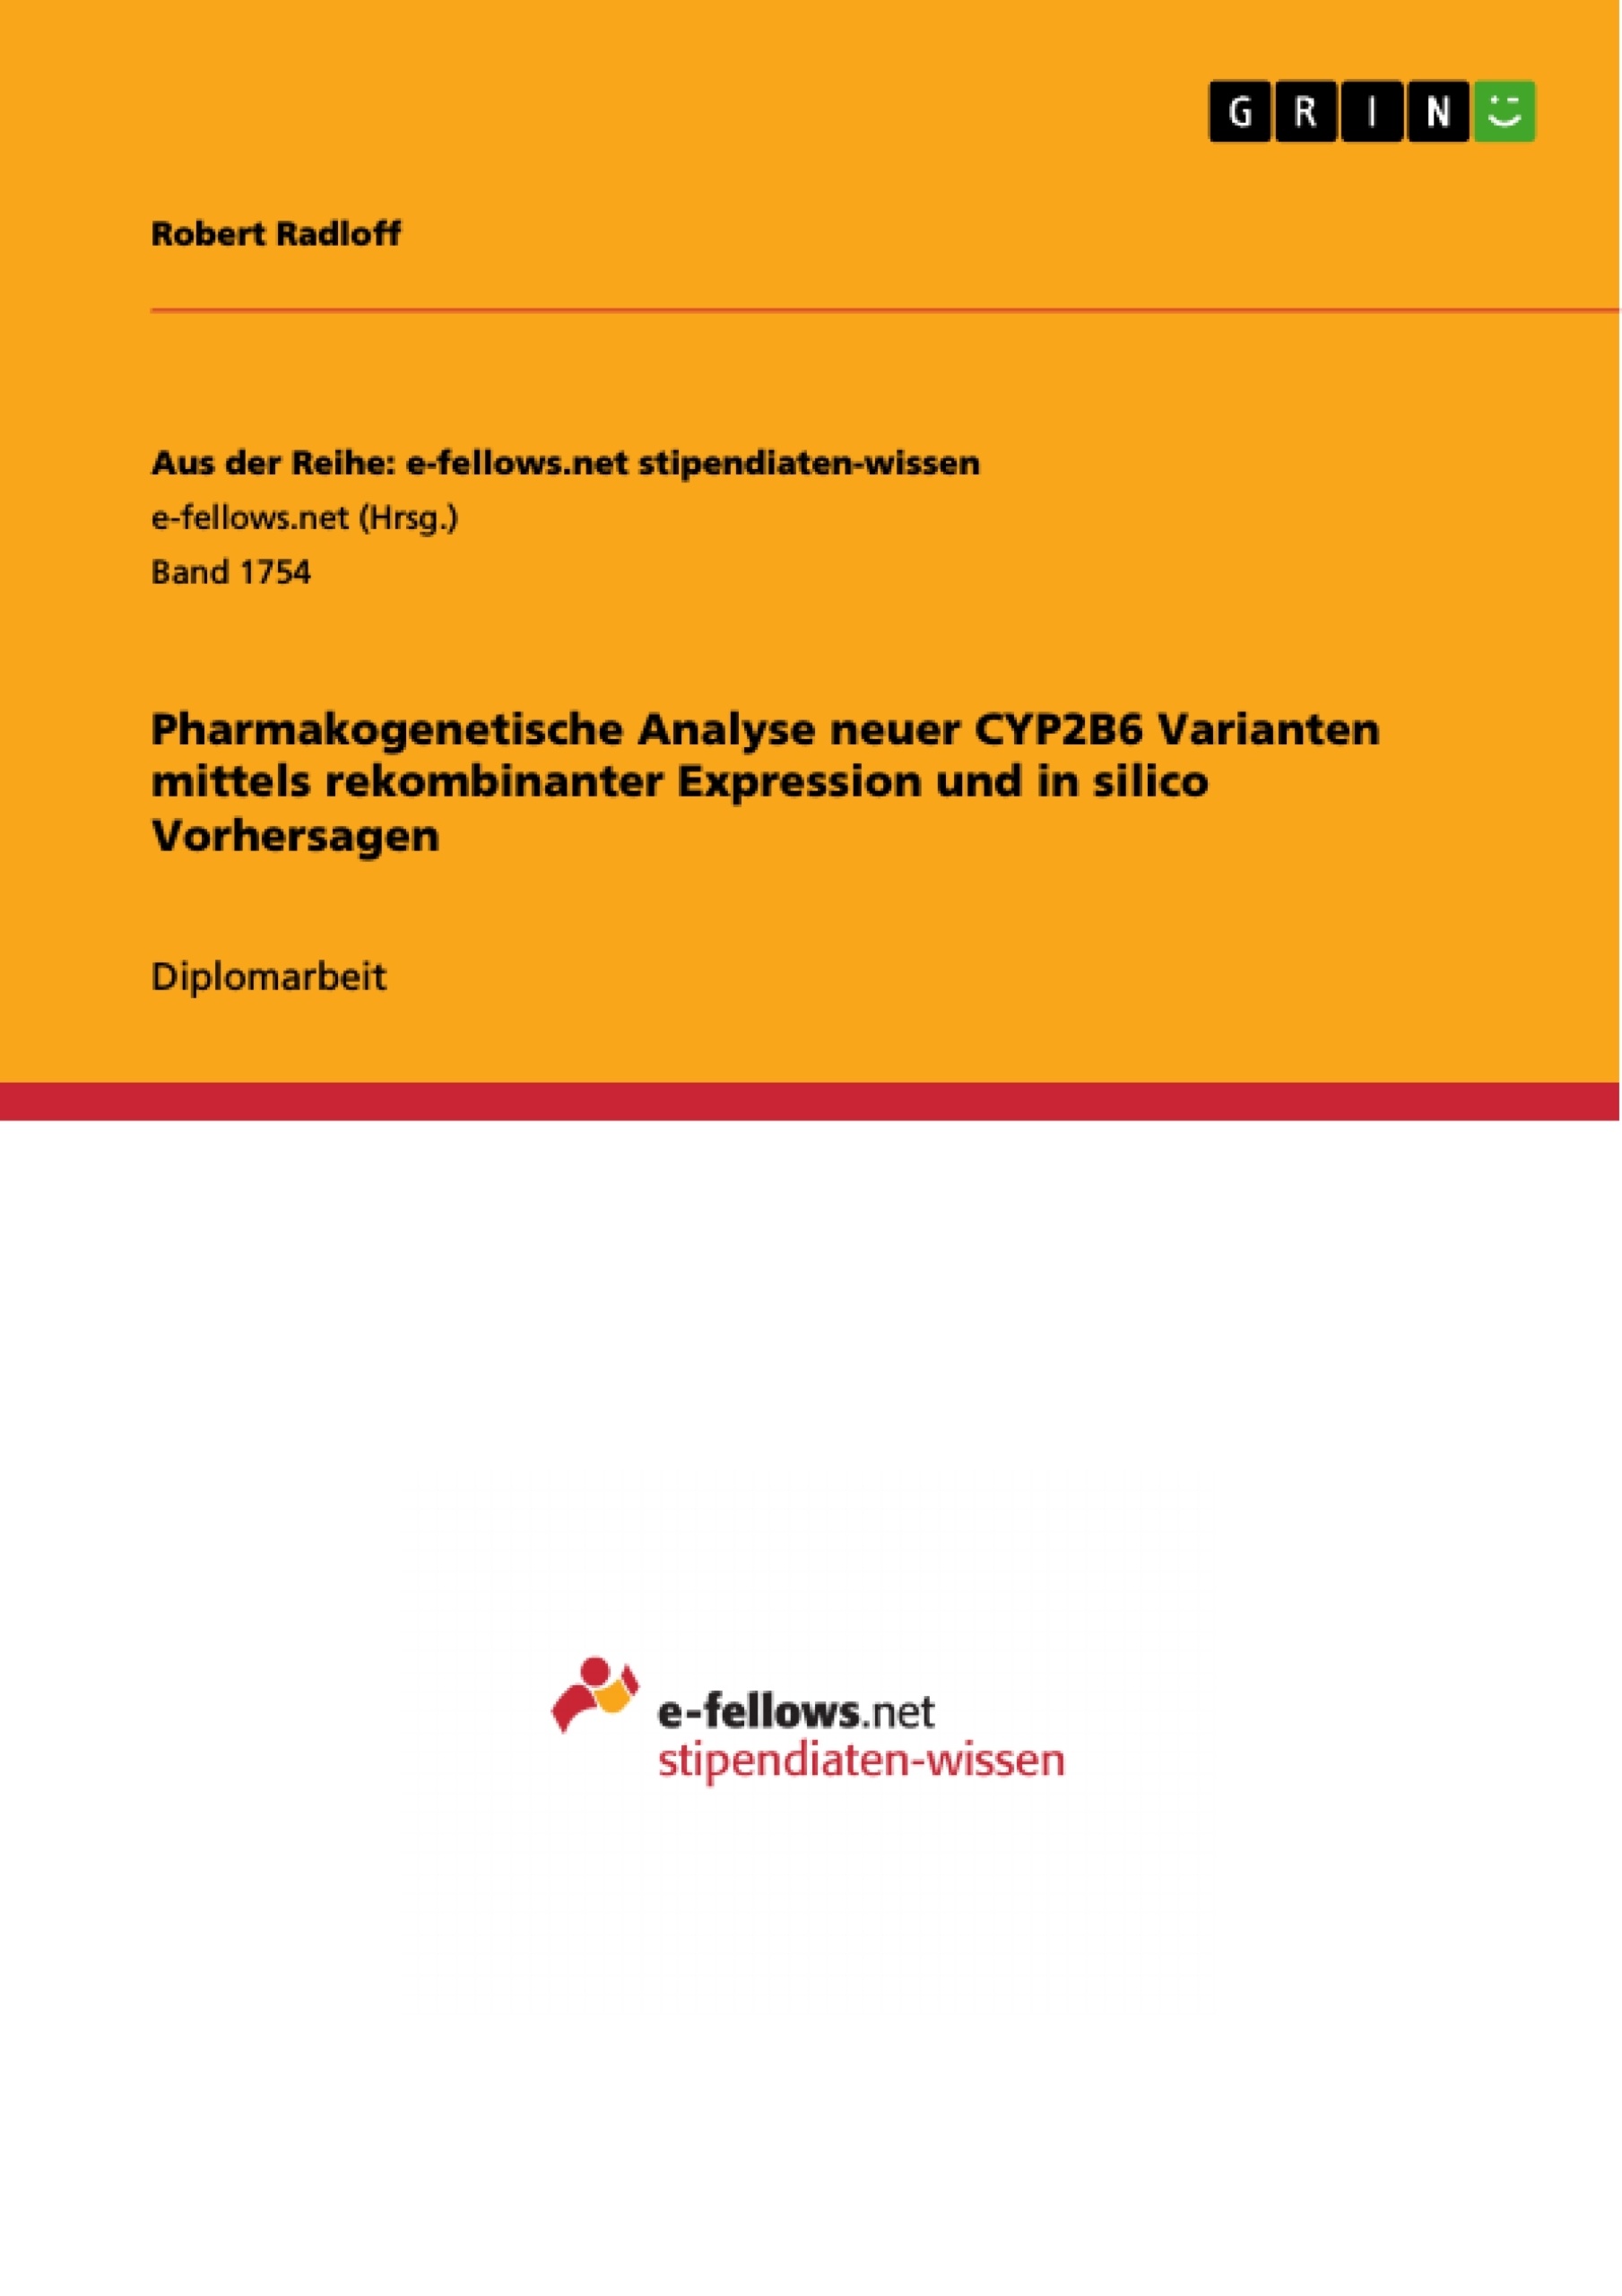 Title: Pharmakogenetische Analyse neuer CYP2B6 Varianten mittels rekombinanter Expression und in silico Vorhersagen